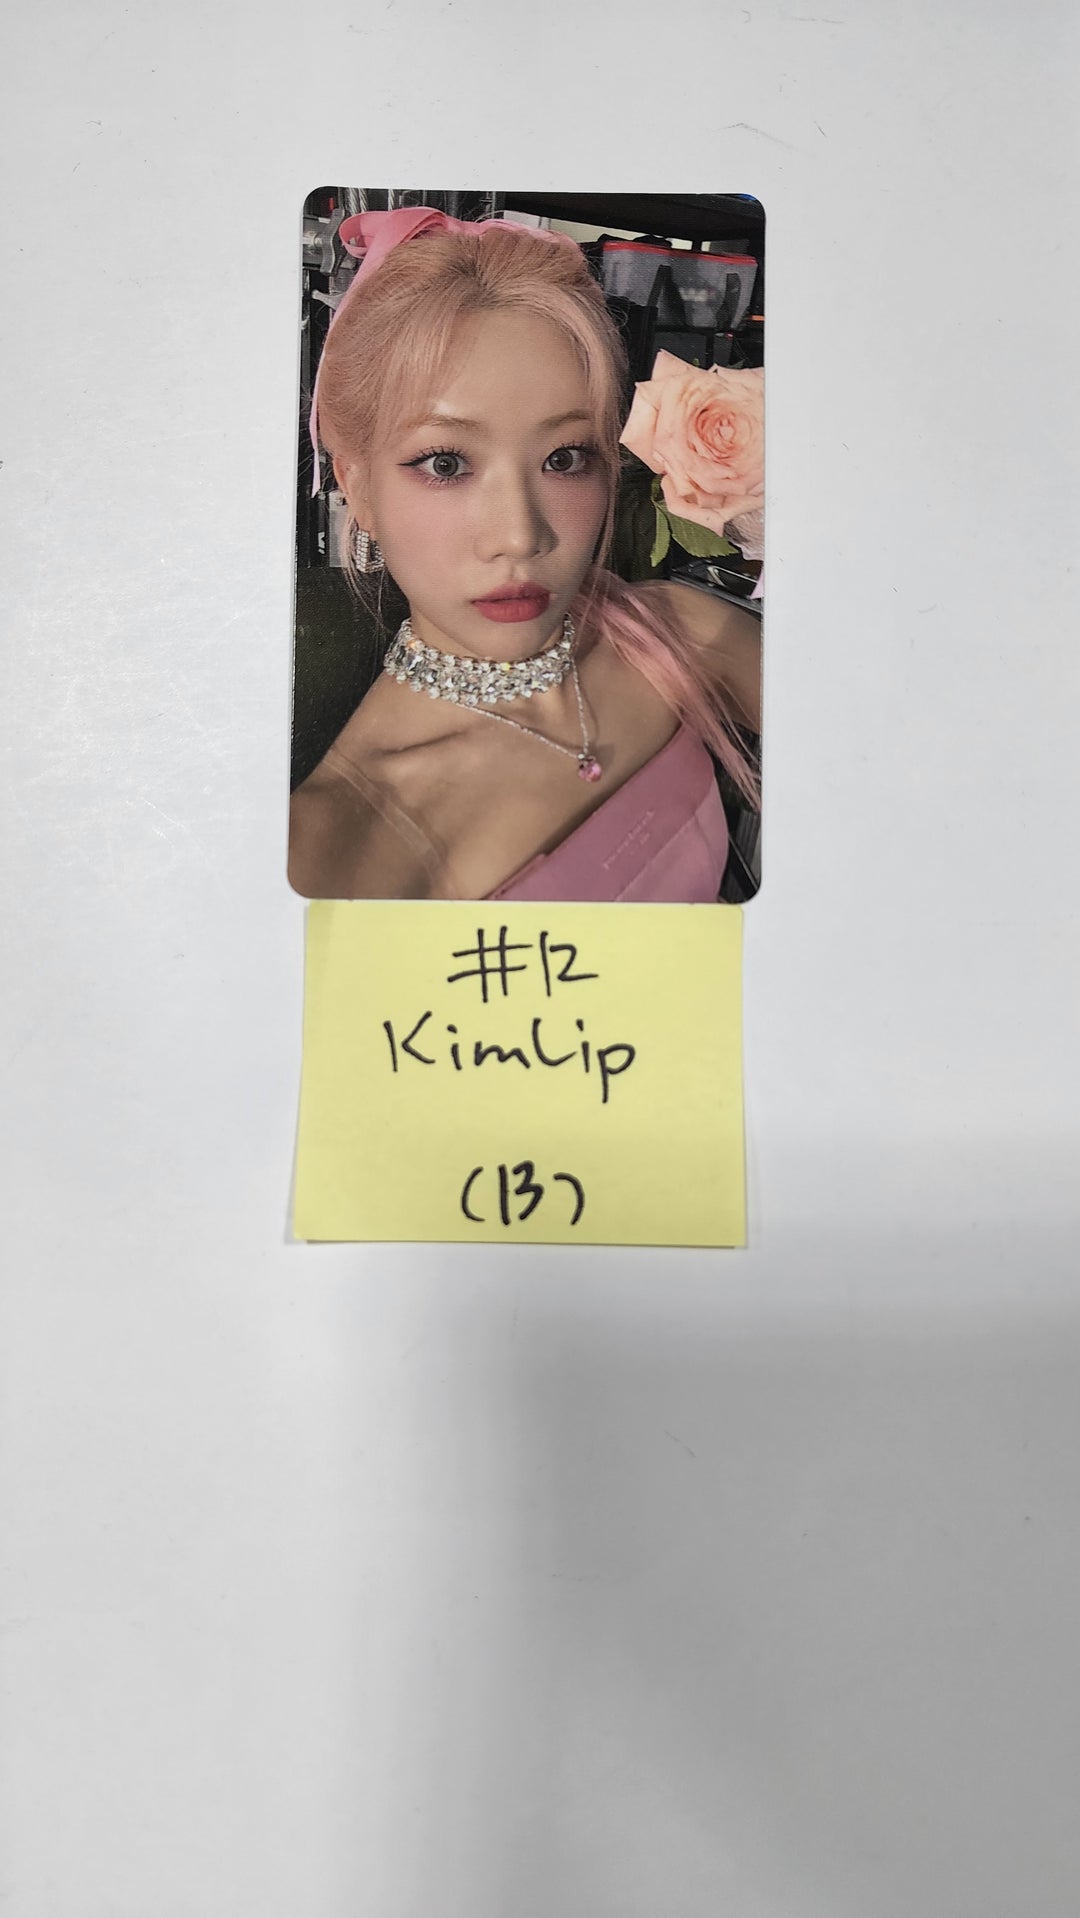 이달의 소녀 "Flip That" Summer Special Mini Album - Official Photocard [비비, 김립, 진솔, 최리]